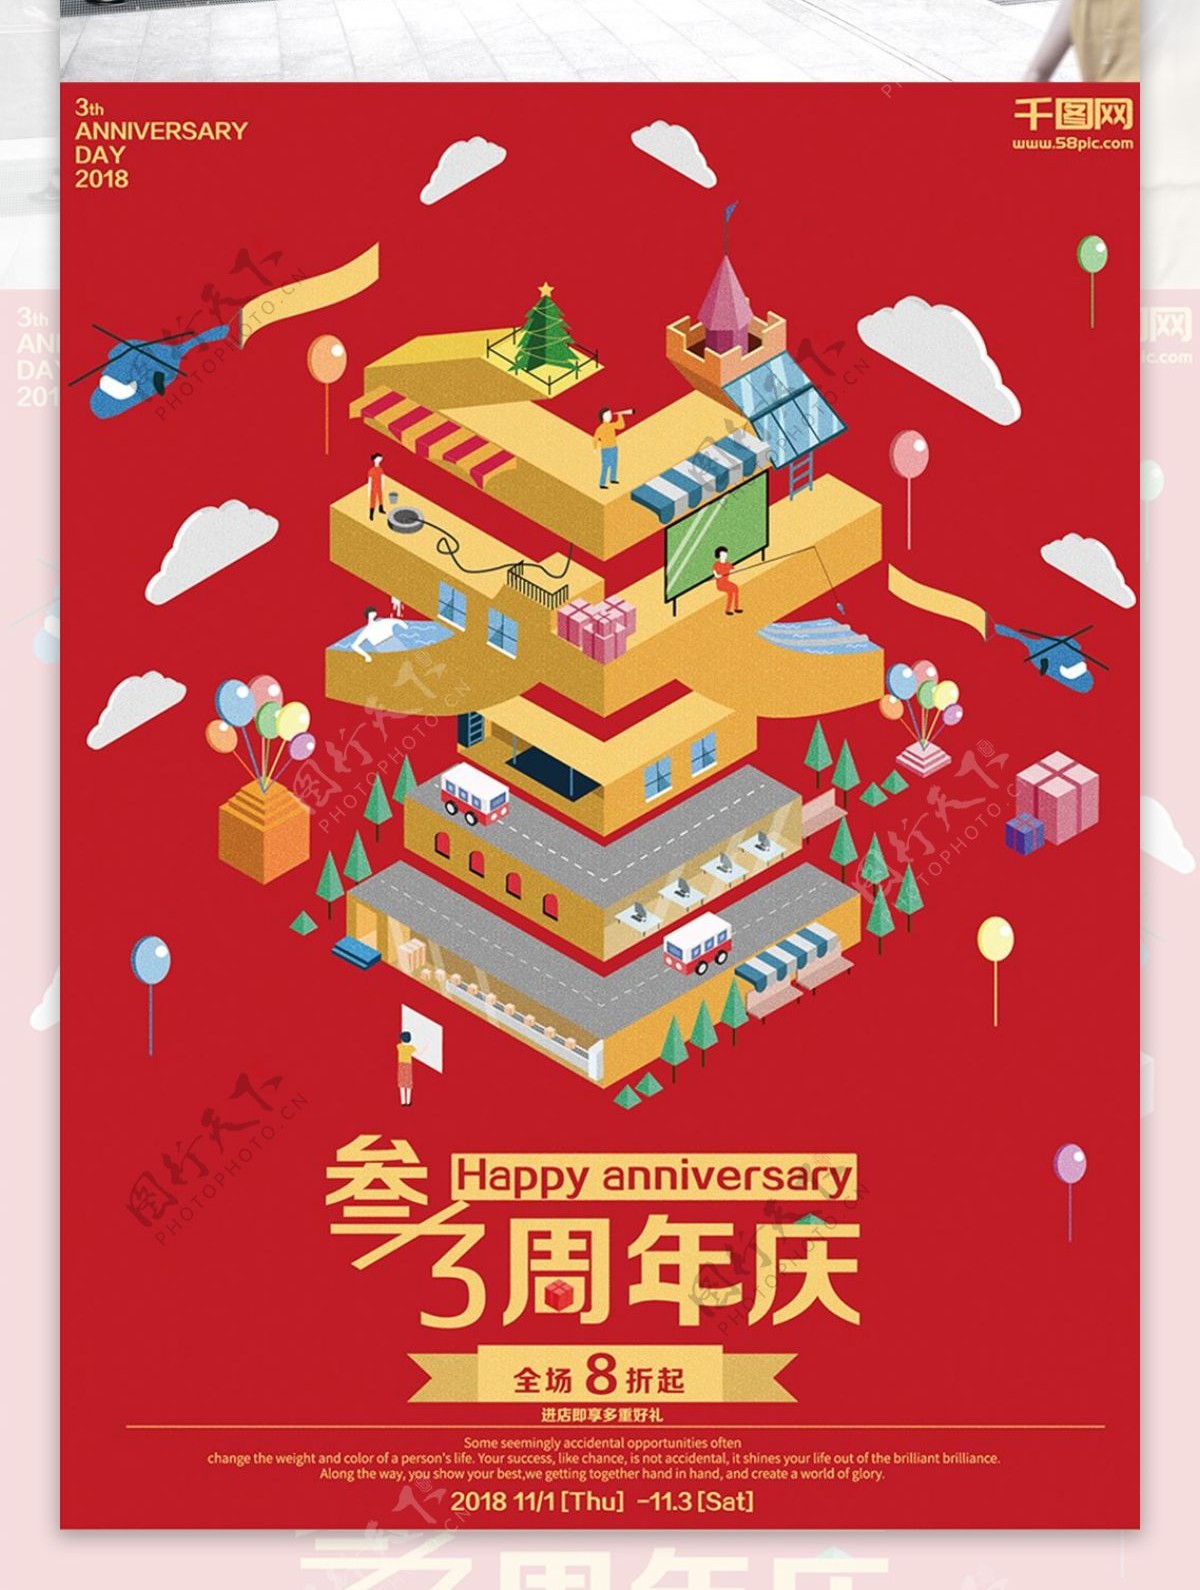 原创2.5D插画风格三周年周年庆海报